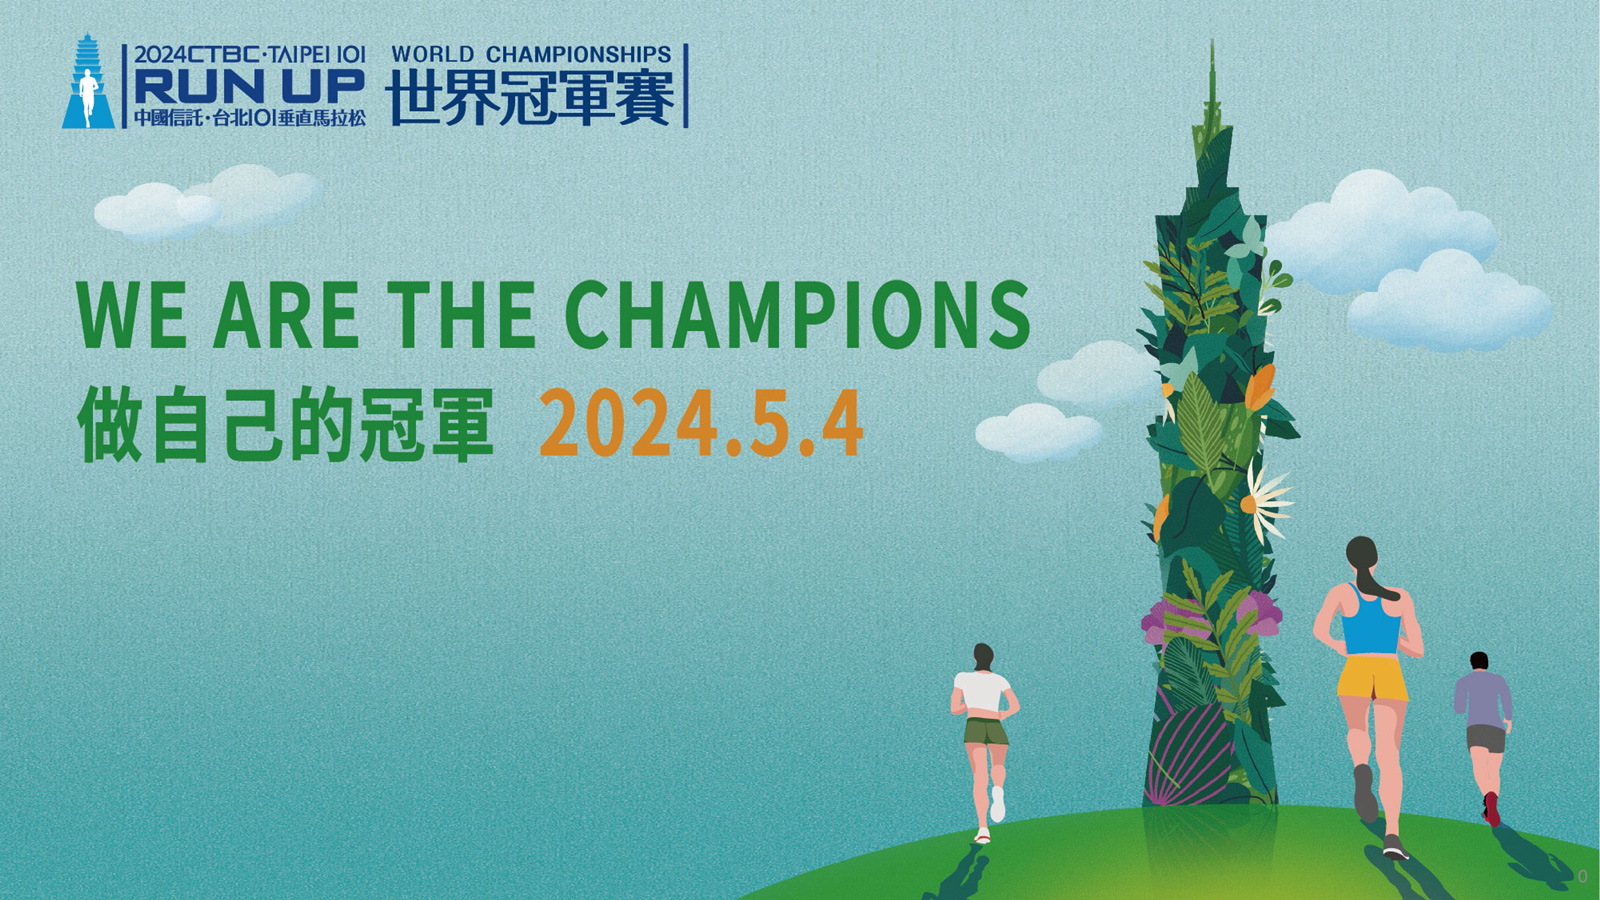 台北101於3月14日宣布將再次舉辦世界登高積分巡迴賽之「台北101垂直馬拉松世界冠軍賽」，賽事將於5月4日正式開跑。（圖片來源：台北101提供）